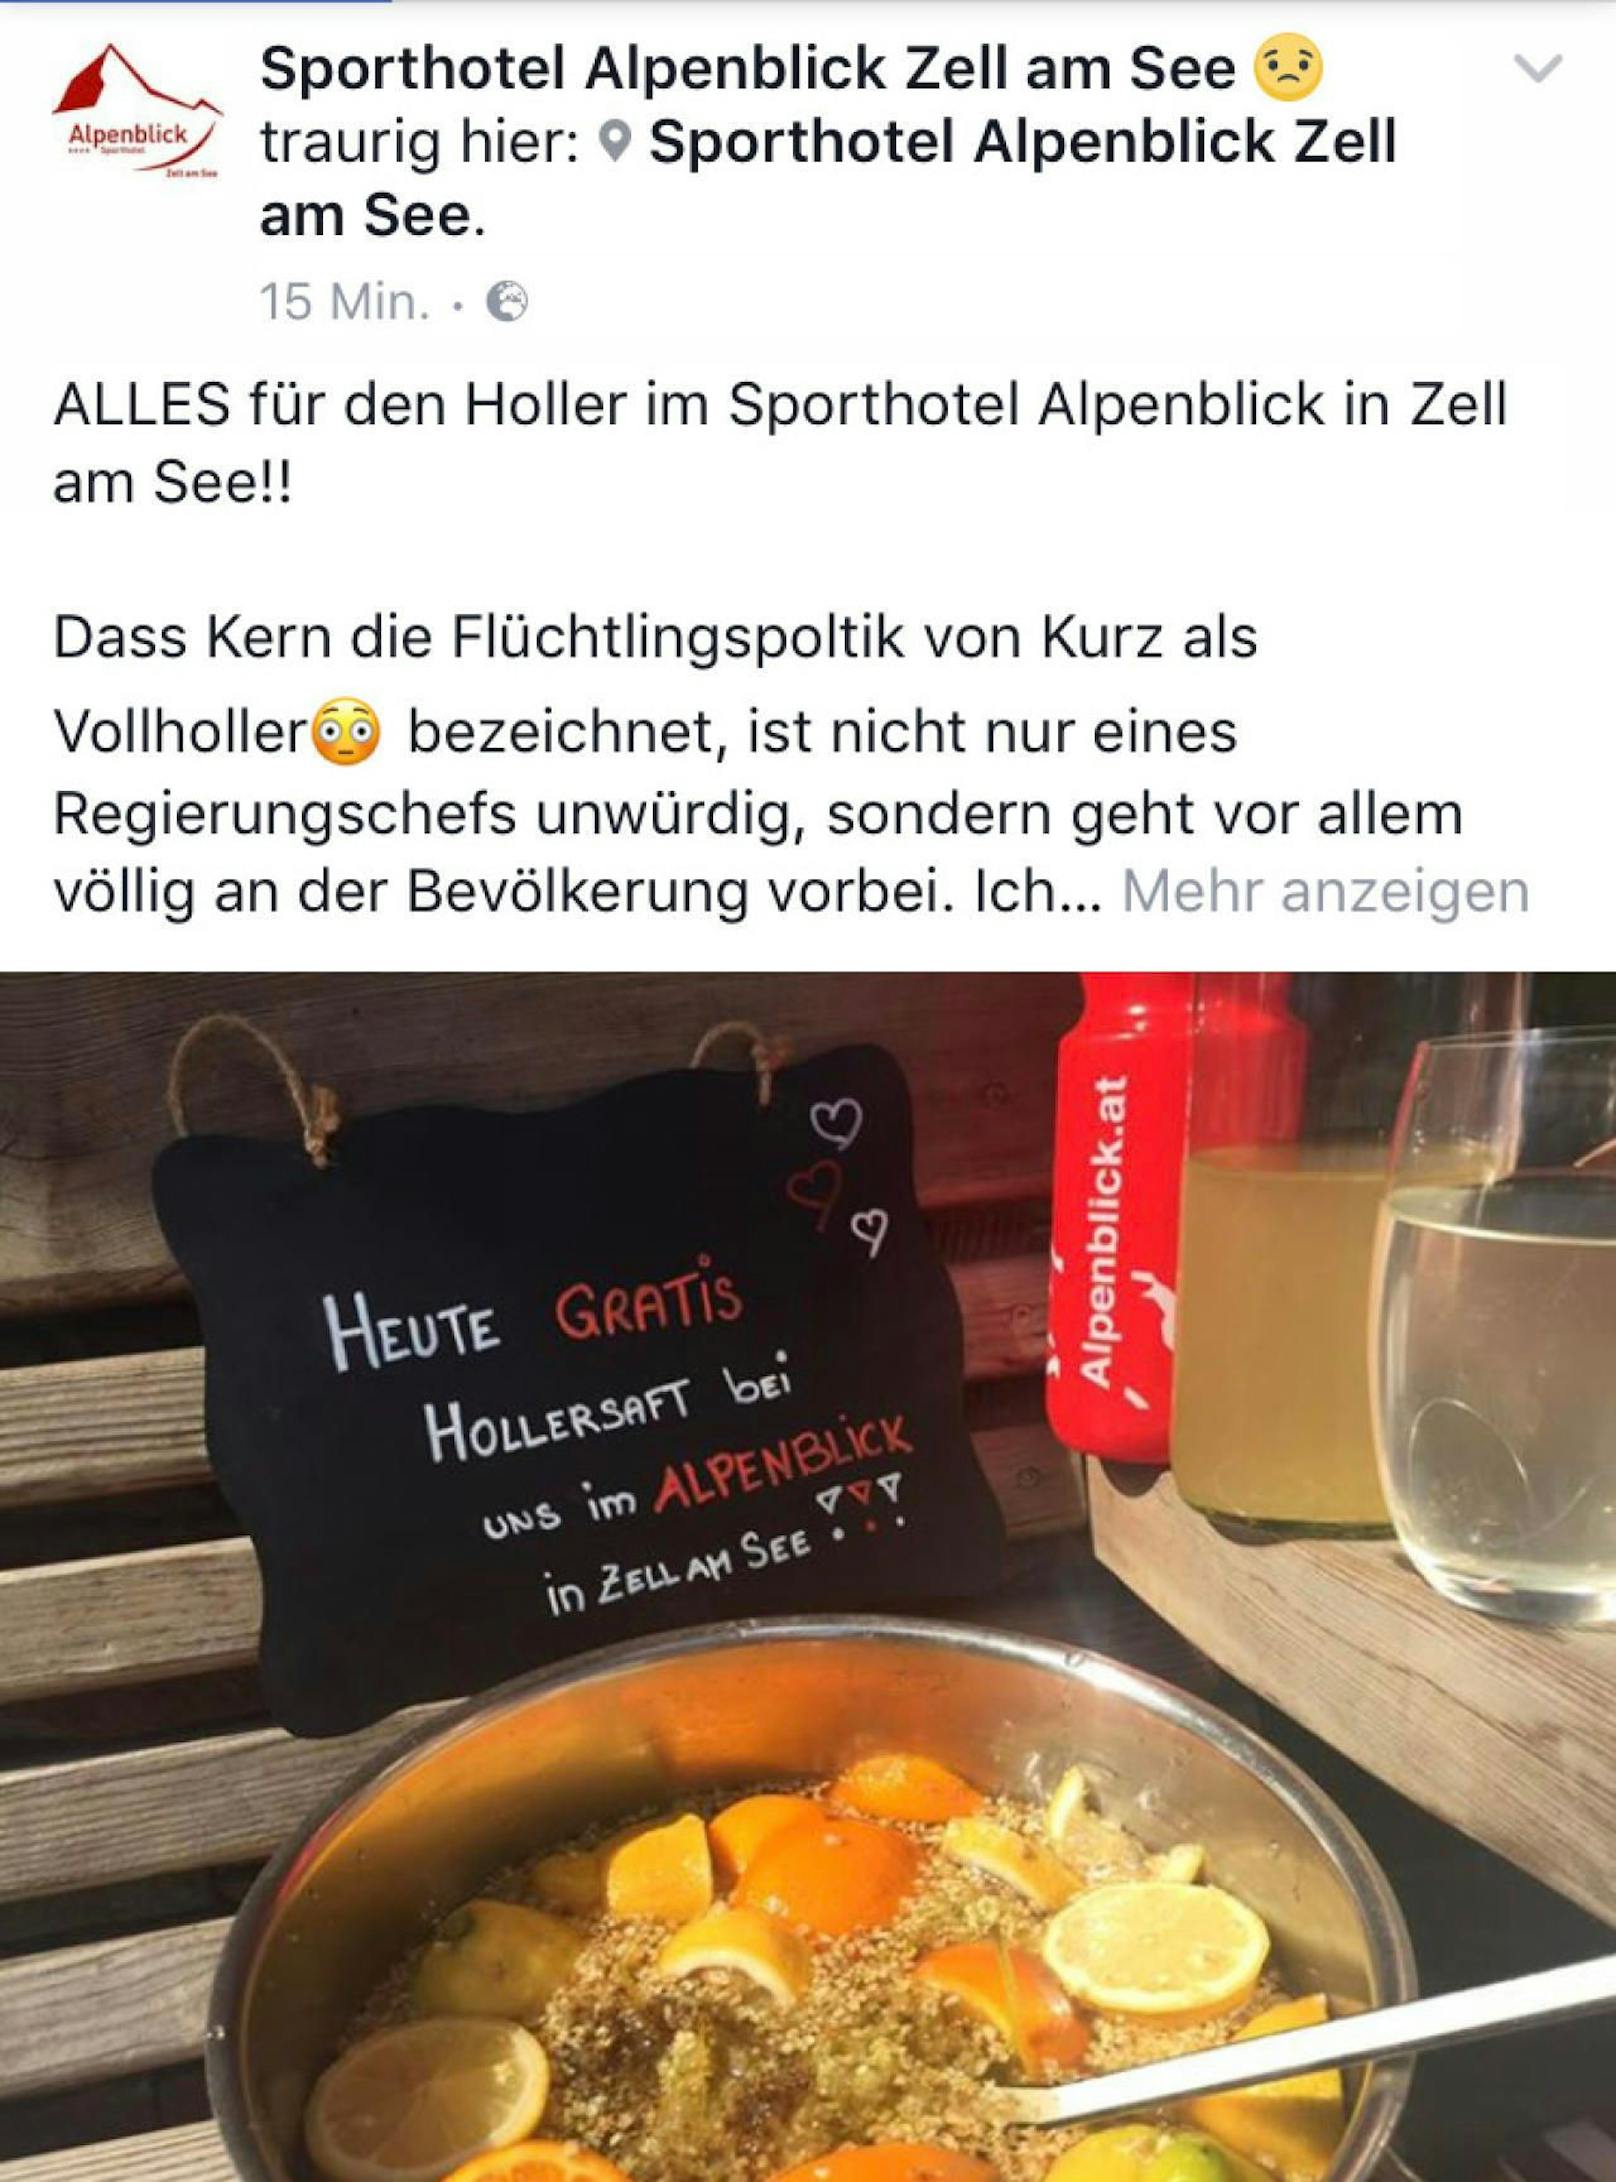 Sporthotel Alpenblick schenkt nach Kern-Sager gratis Hollersaft aus